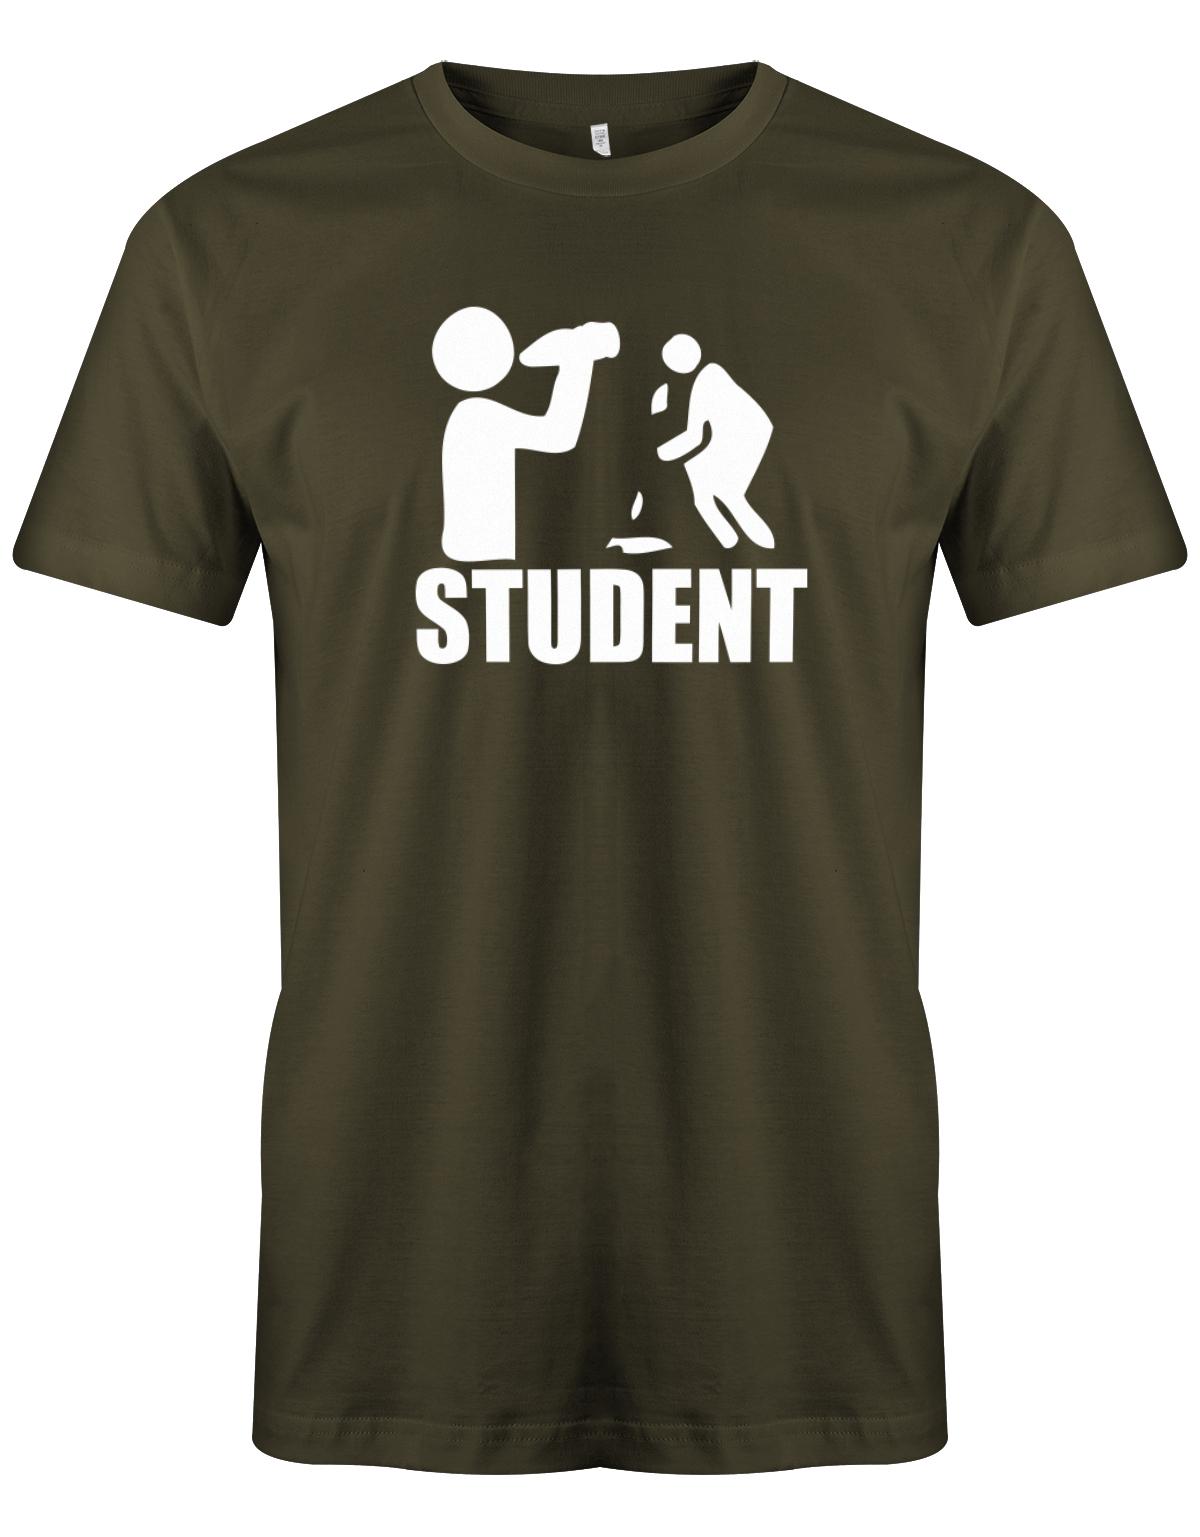 Student-Kotzen-Herren-Shirt-Army